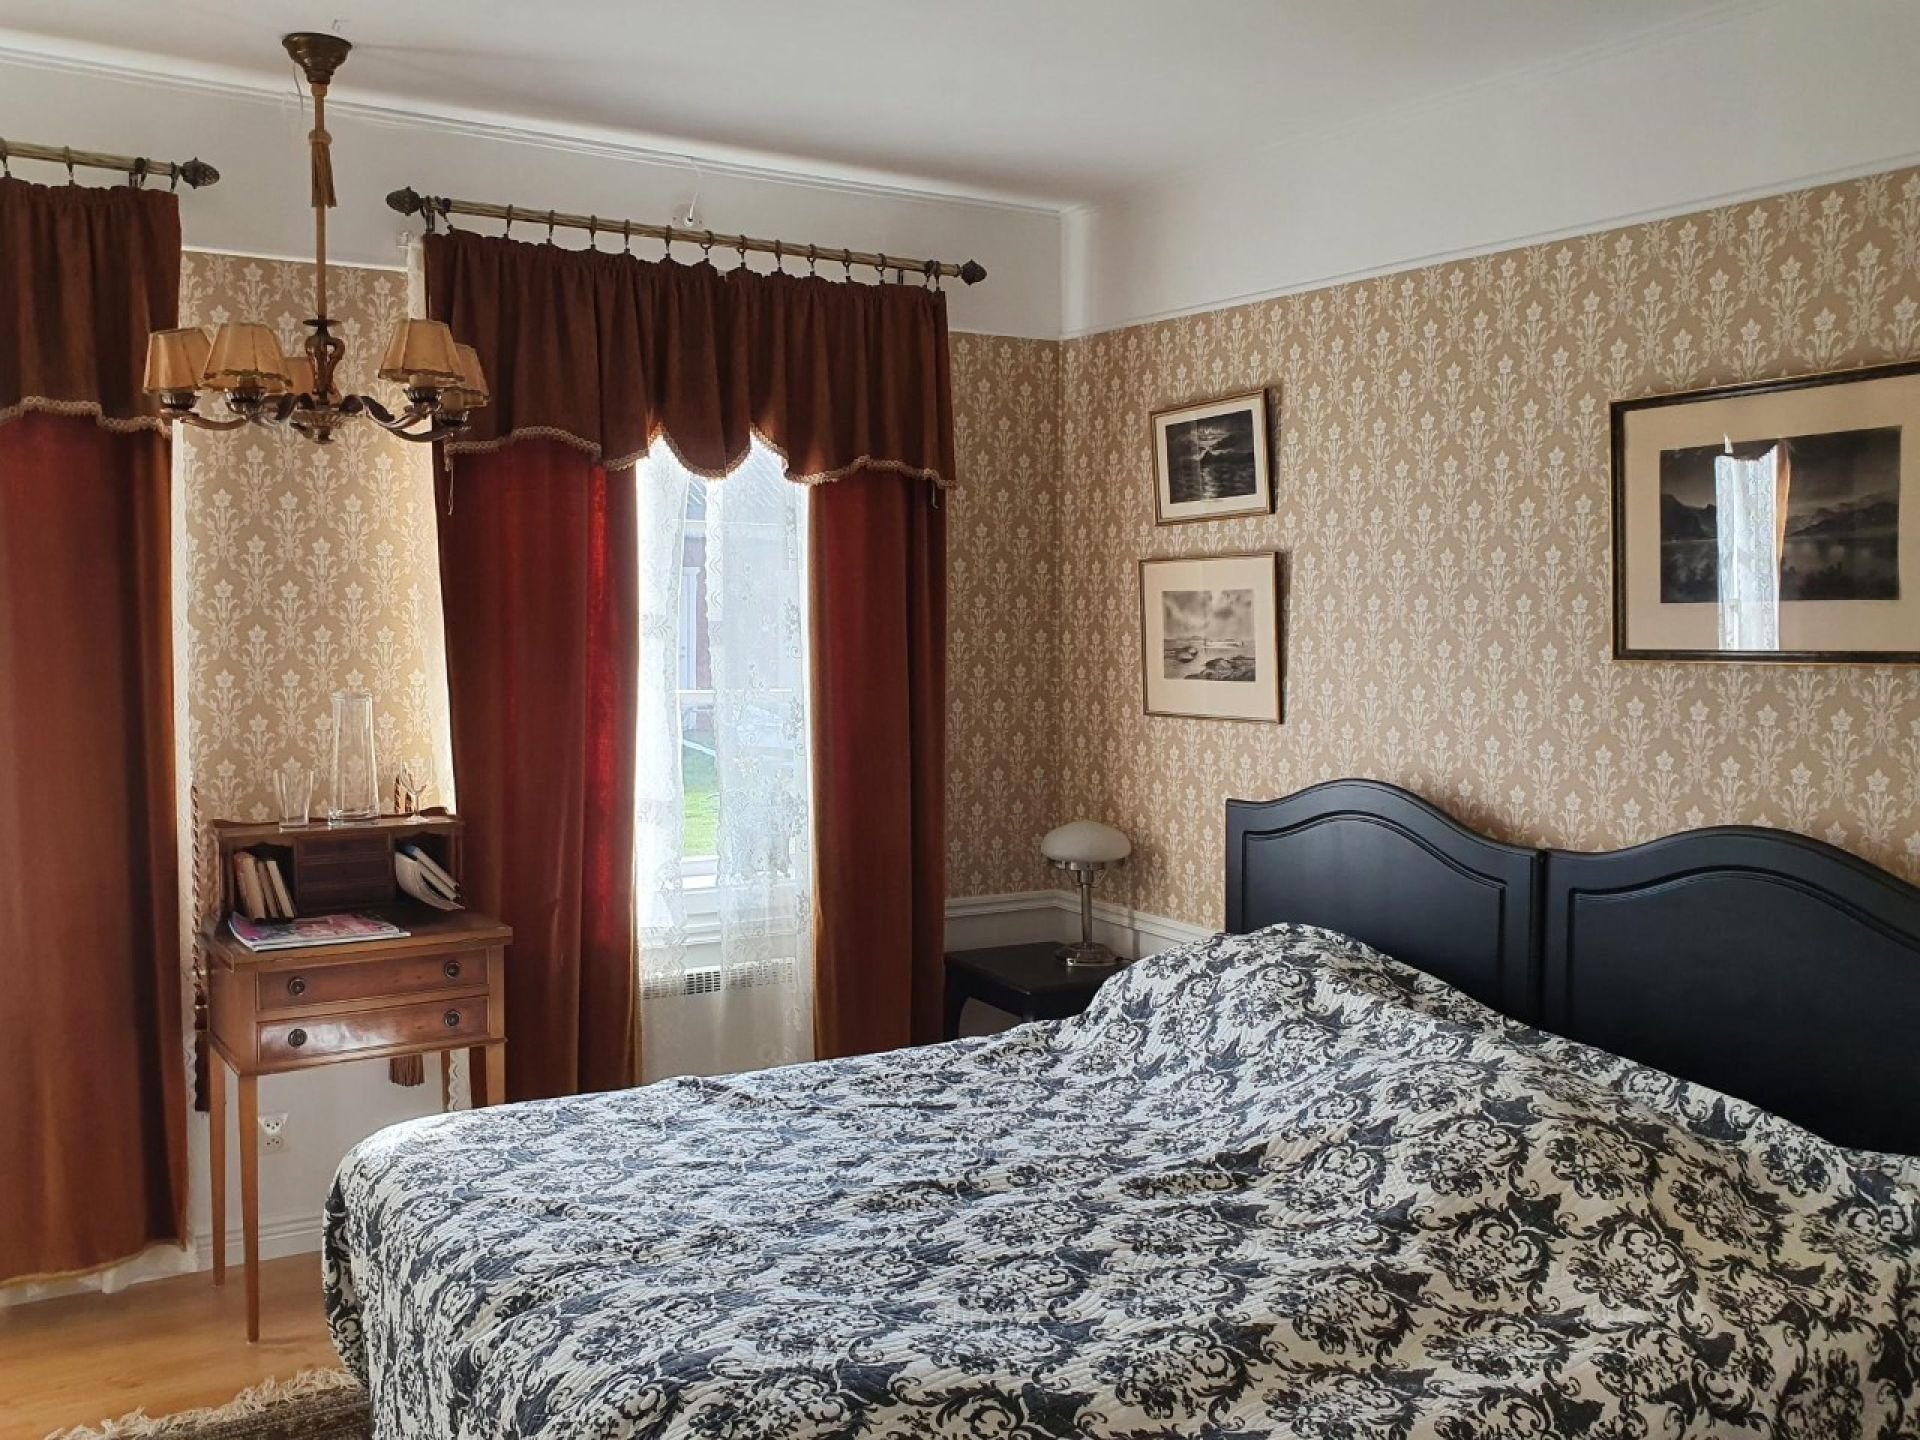 Rummen på Svaneholm Hotel är inredda i vintagestil.